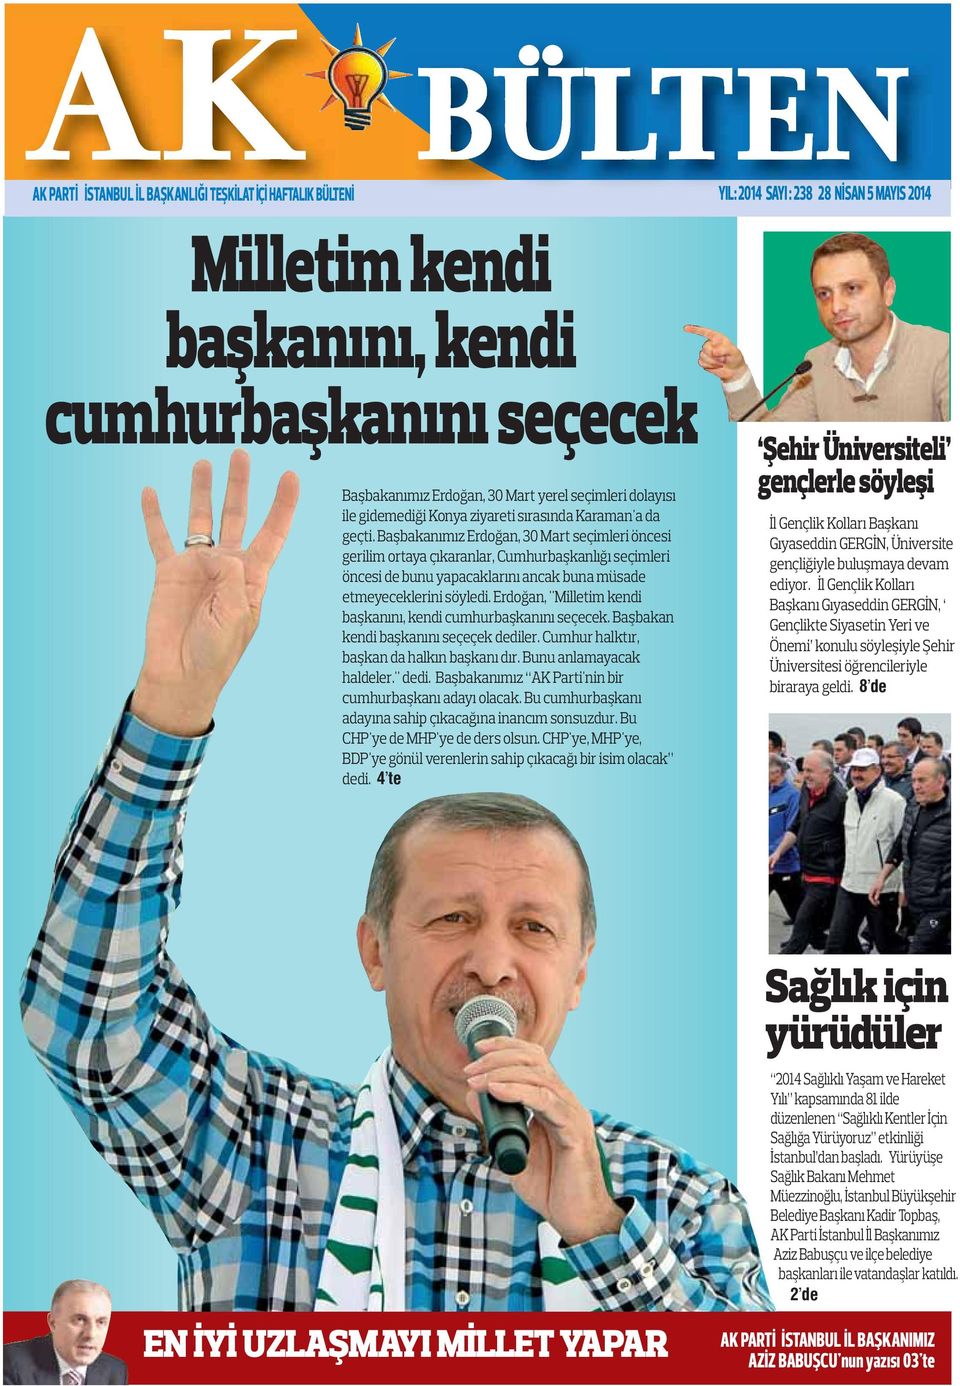 Başbakanımız Erdoğan, 30 Mart seçimleri öncesi gerilim ortaya çıkaranlar, Cumhurbaşkanlığı seçimleri öncesi de bunu yapacaklarını ancak buna müsade etmeyeceklerini söyledi.